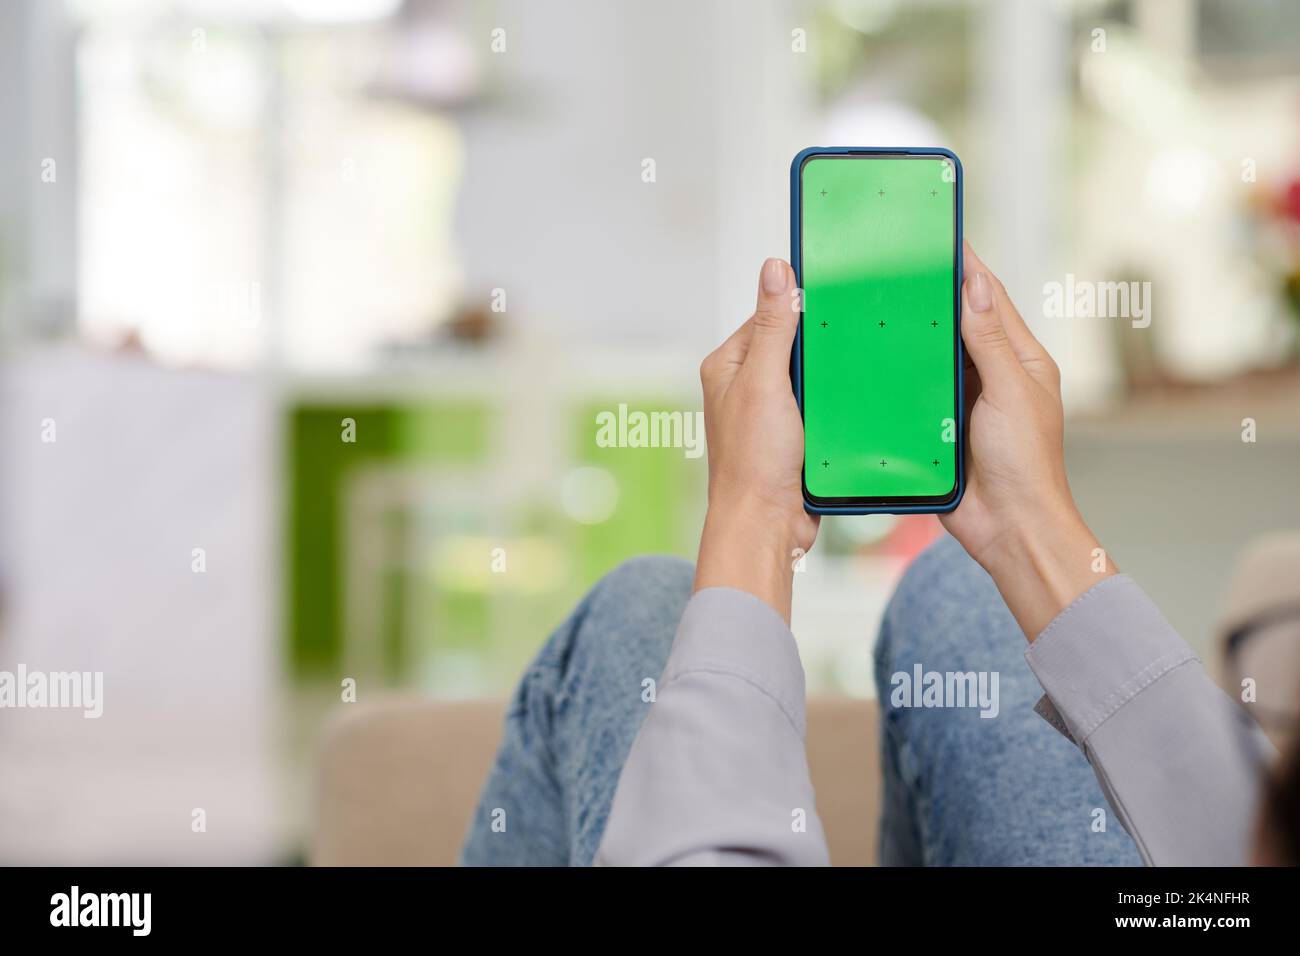 Smartphone mit leerem grünen Bildschirm, der von einer jungen Frau in einer legeren Kleidung gehalten wird, die vor der Kamera sitzt und eine neue mobile Anwendung verwendet Stockfoto